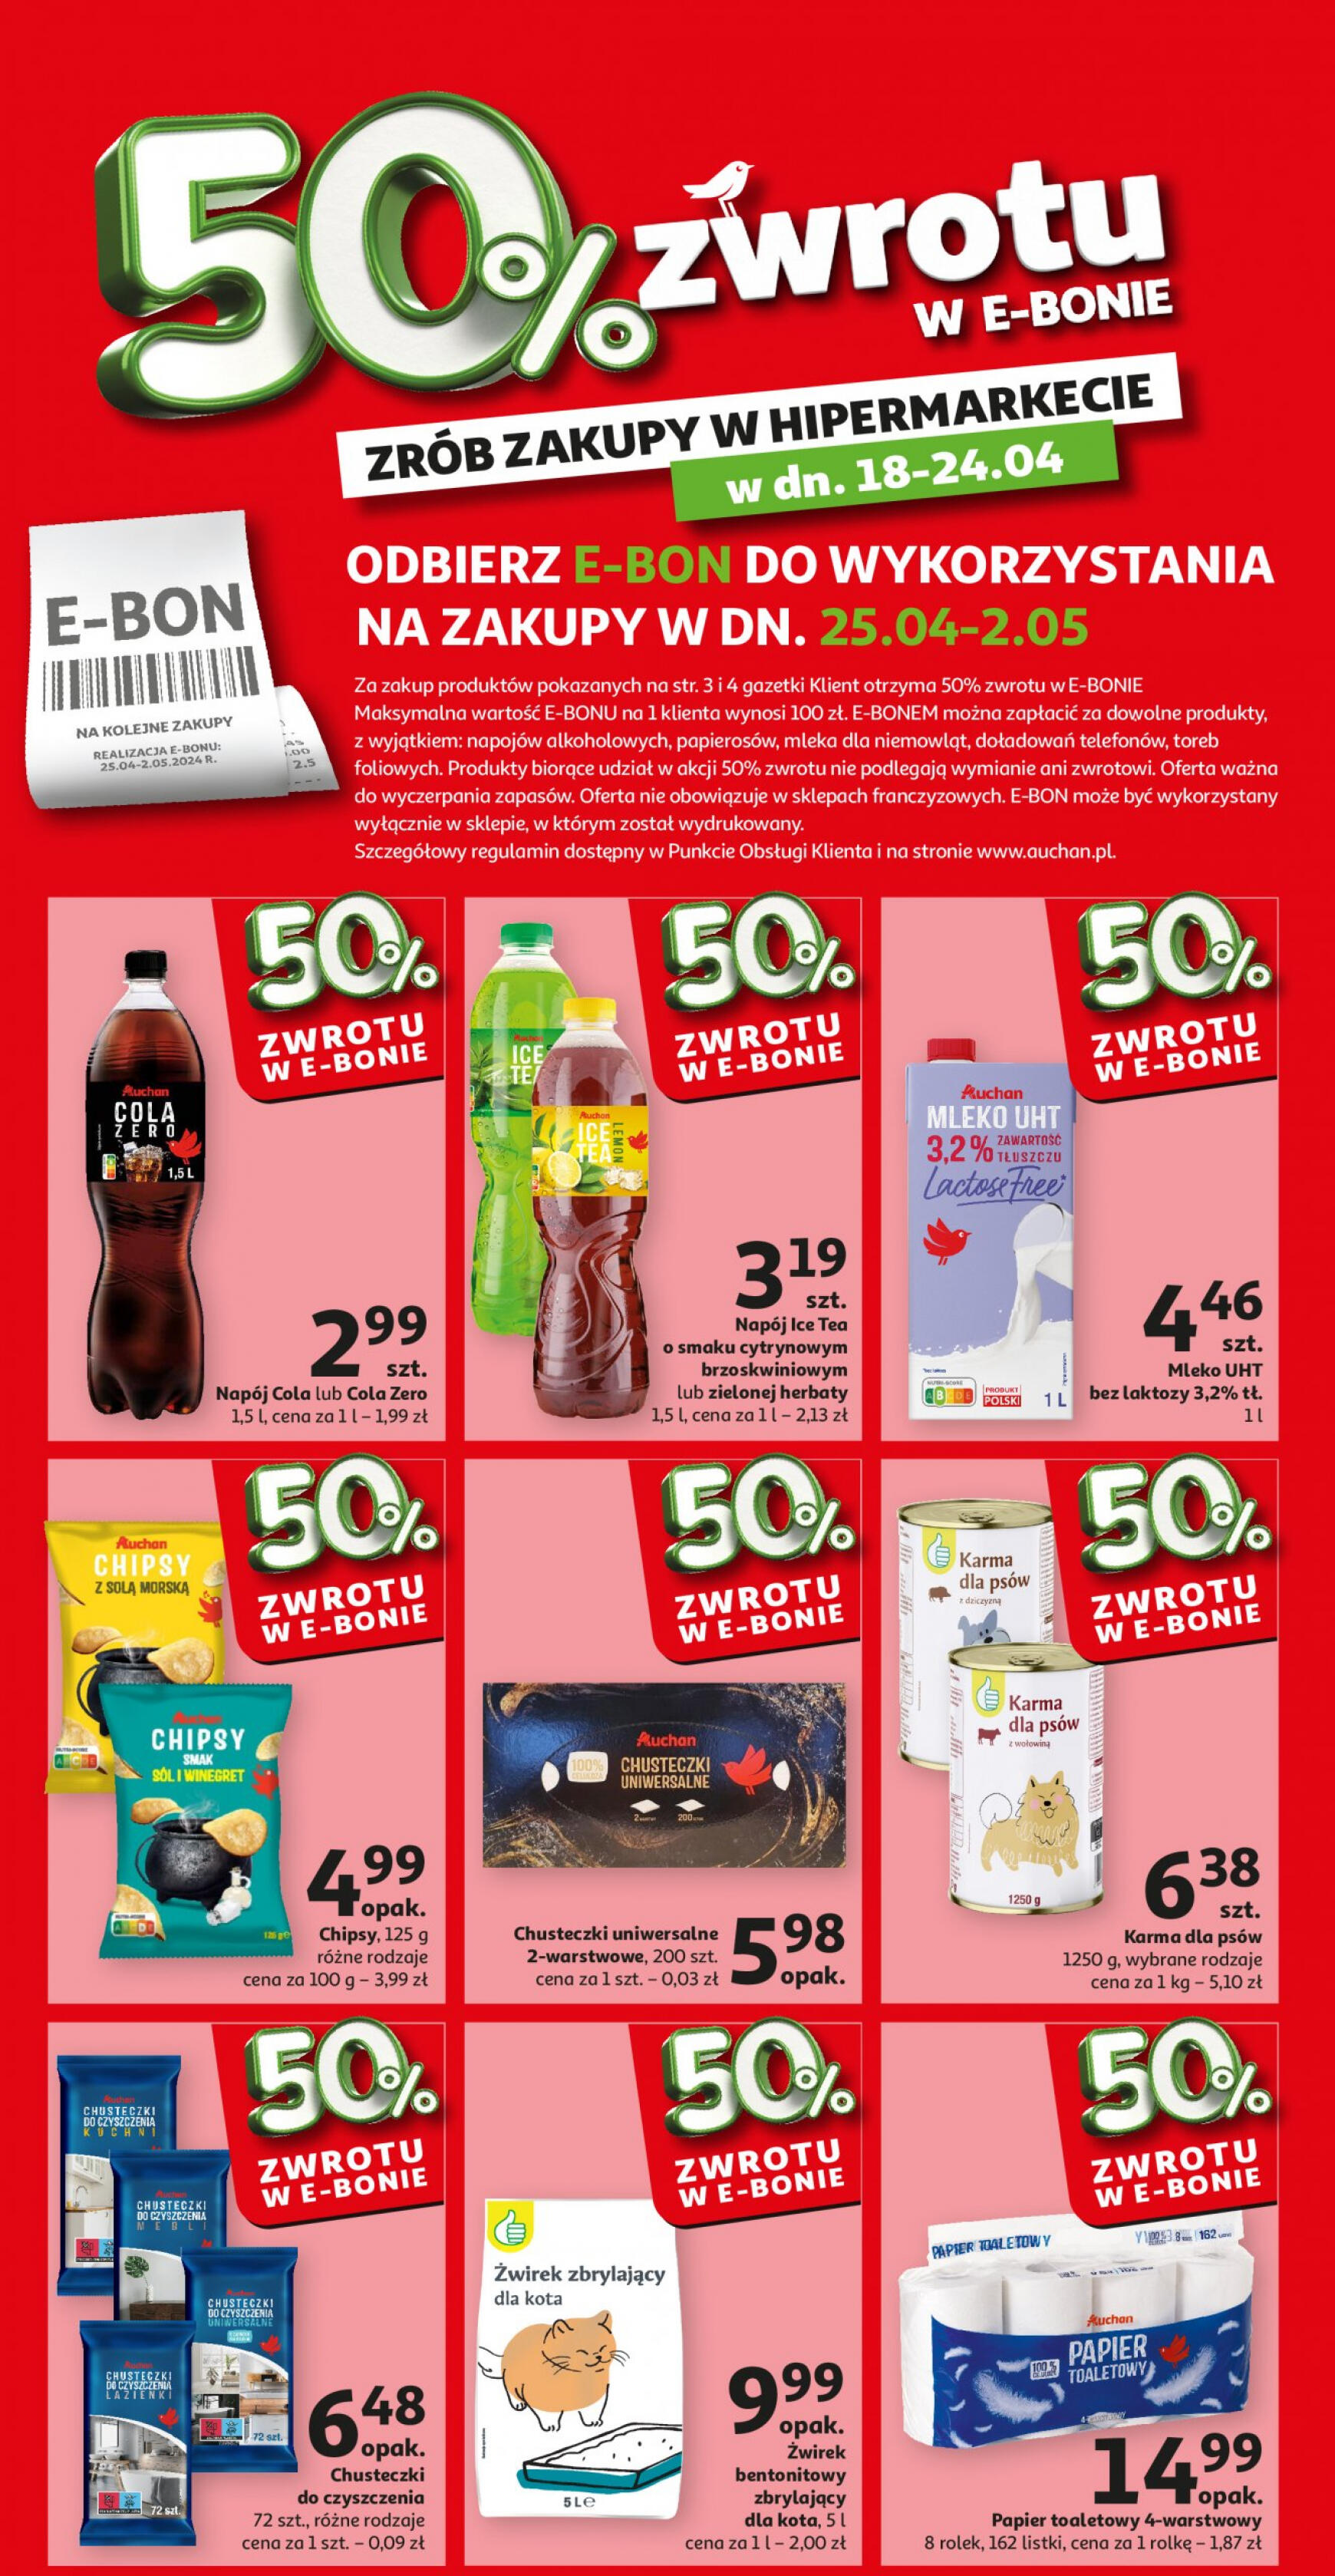 auchan - Auchan - Oferta 50% zwrotu w e-bonie gazetka aktualna ważna od 18.04. - 24.04.